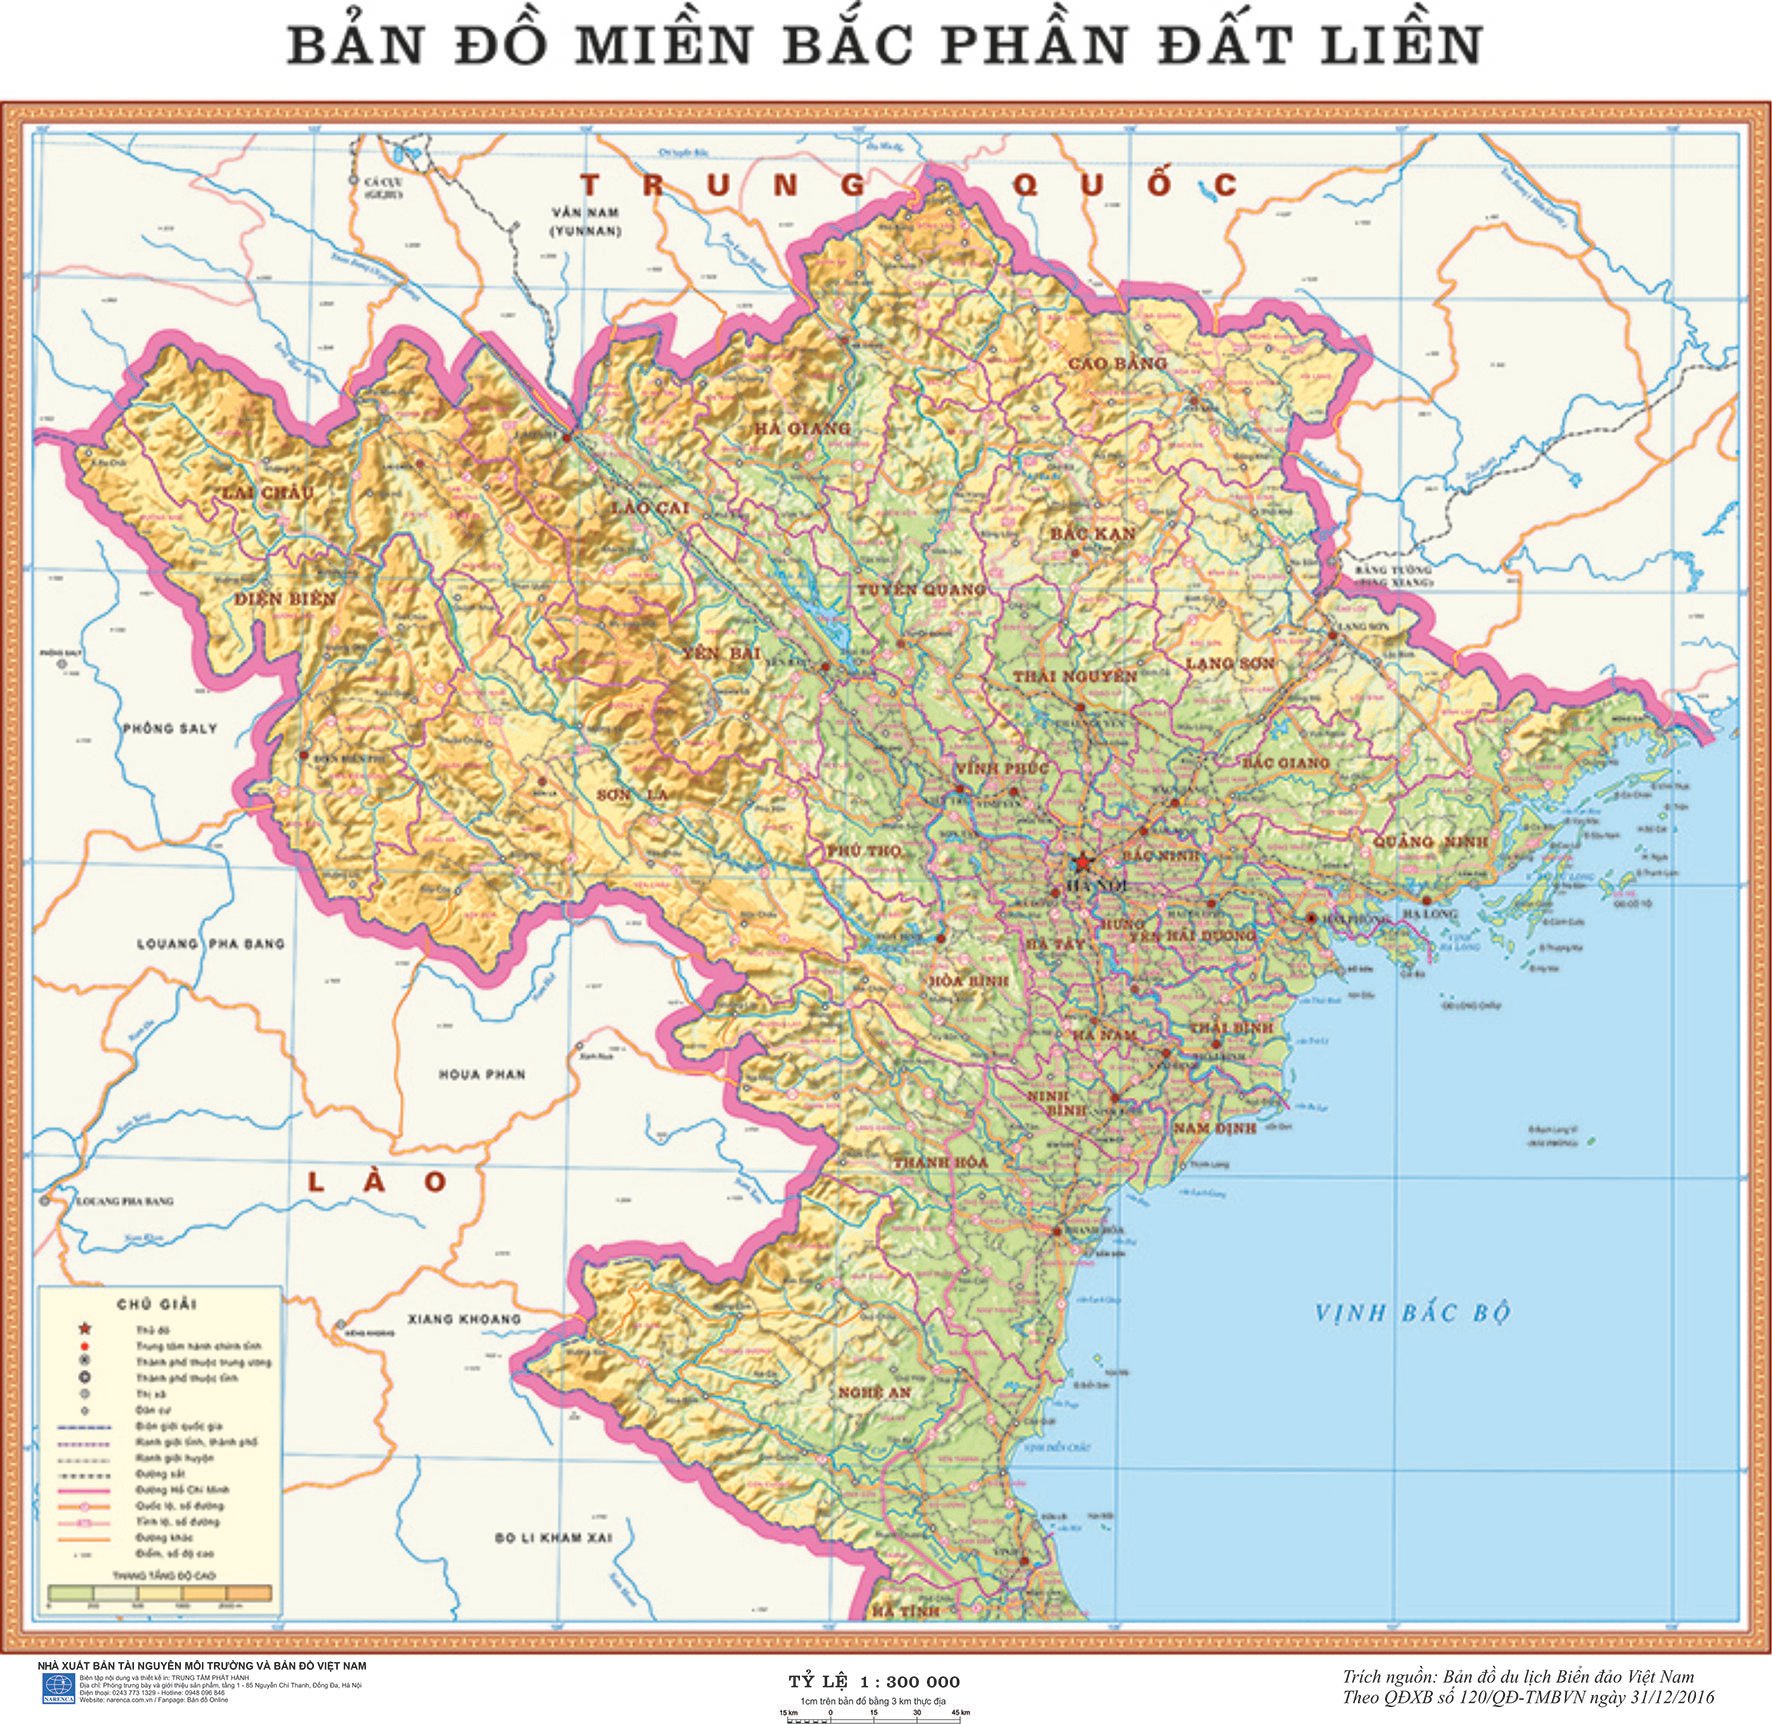 Bản đồ tự nhiên khám phá các địa điểm đẹp nhất của Việt Nam từ đồng bằng châu thổ sông Hồng đến những dãy núi phía Bắc. Bản đồ tự nhiên được cập nhật regularly và tự hào về sự chính xác về môi trường. Tận hưởng trải nghiệm mới lạ của bản đồ tự nhiên.